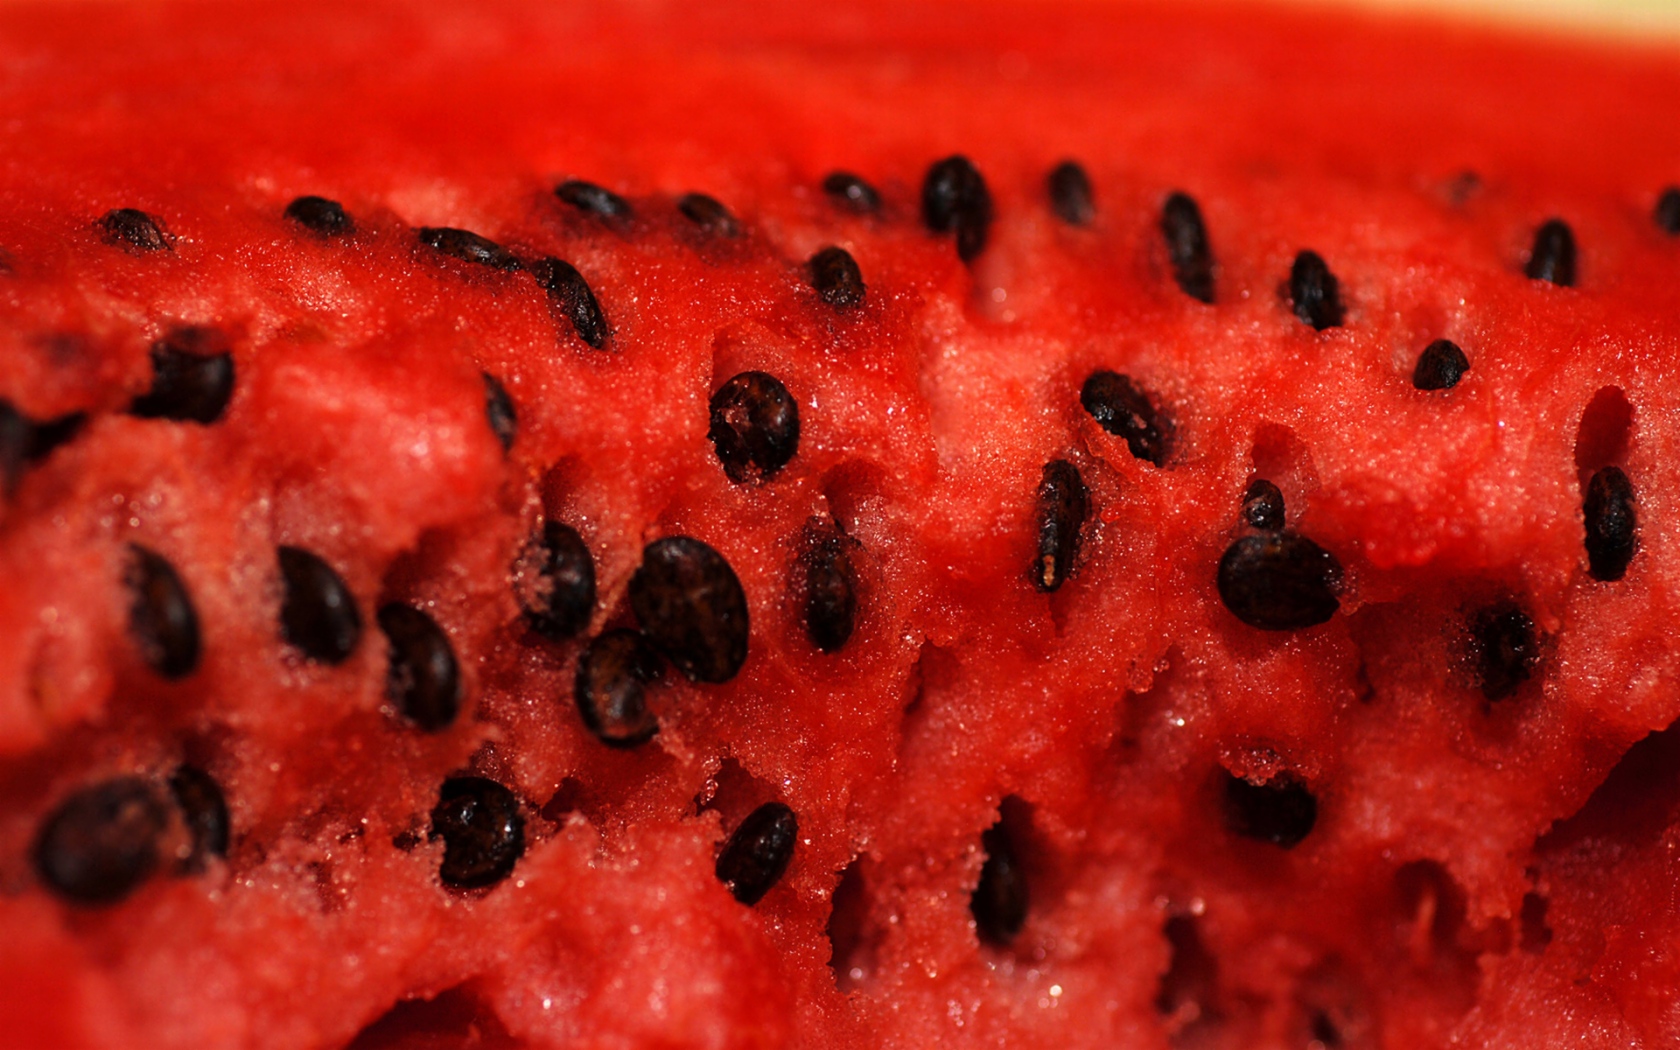 Арбузы, скачать фото, текстура, фон для сайта, watermelon texture background